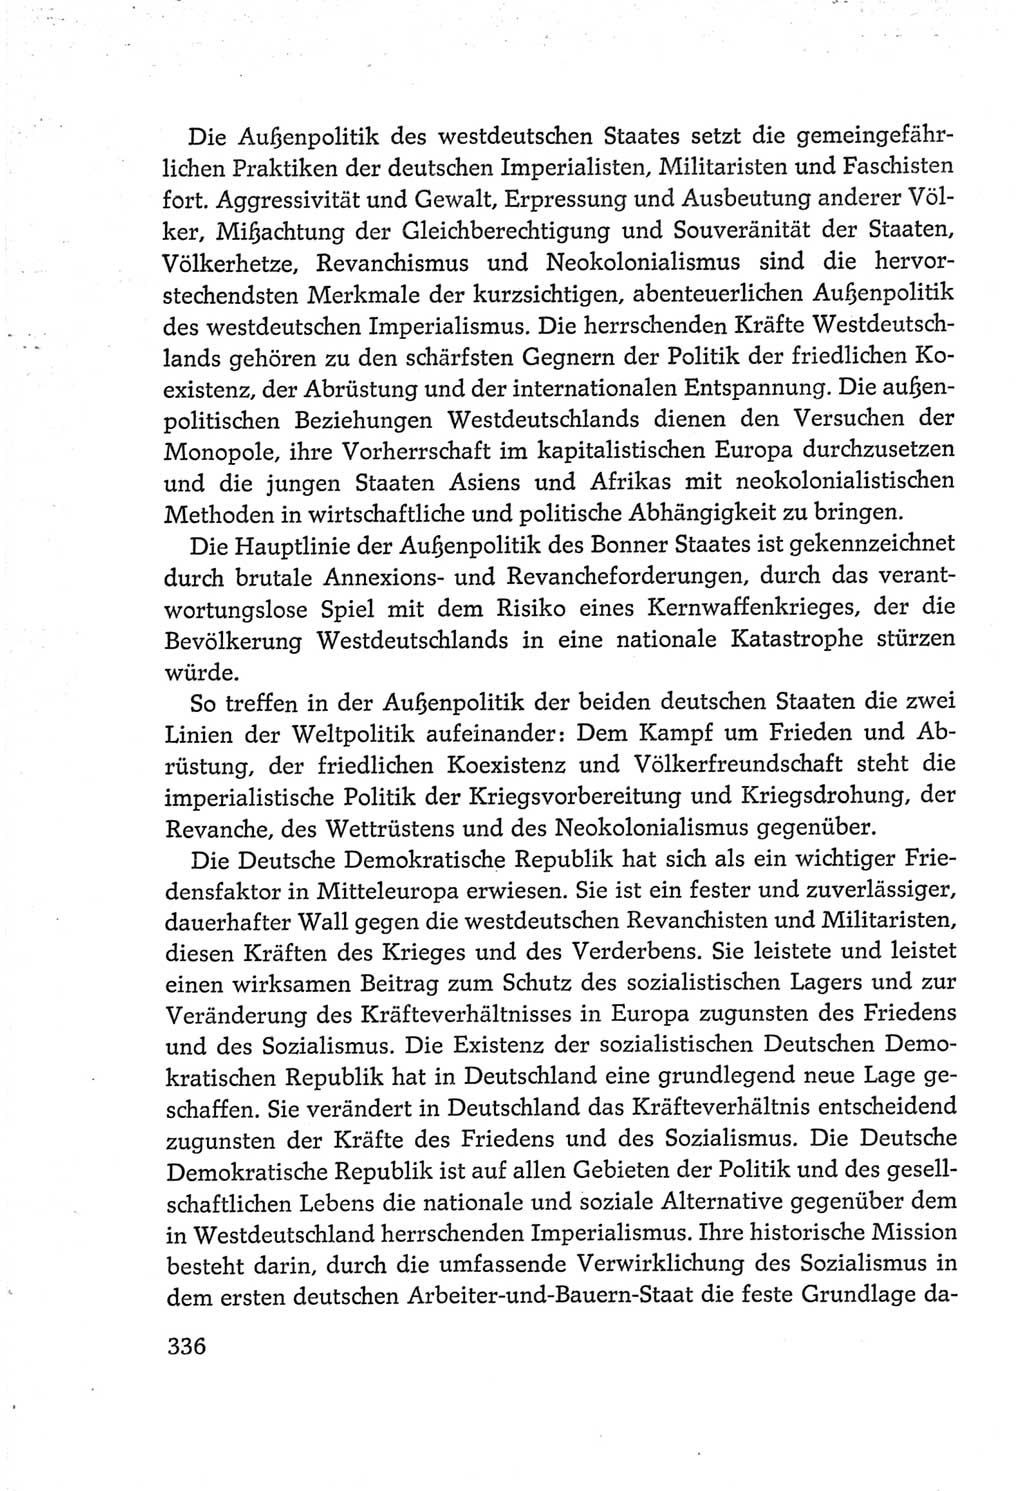 Protokoll der Verhandlungen des Ⅵ. Parteitages der Sozialistischen Einheitspartei Deutschlands (SED) [Deutsche Demokratische Republik (DDR)] 1963, Band Ⅳ, Seite 336 (Prot. Verh. Ⅵ. PT SED DDR 1963, Bd. Ⅳ, S. 336)